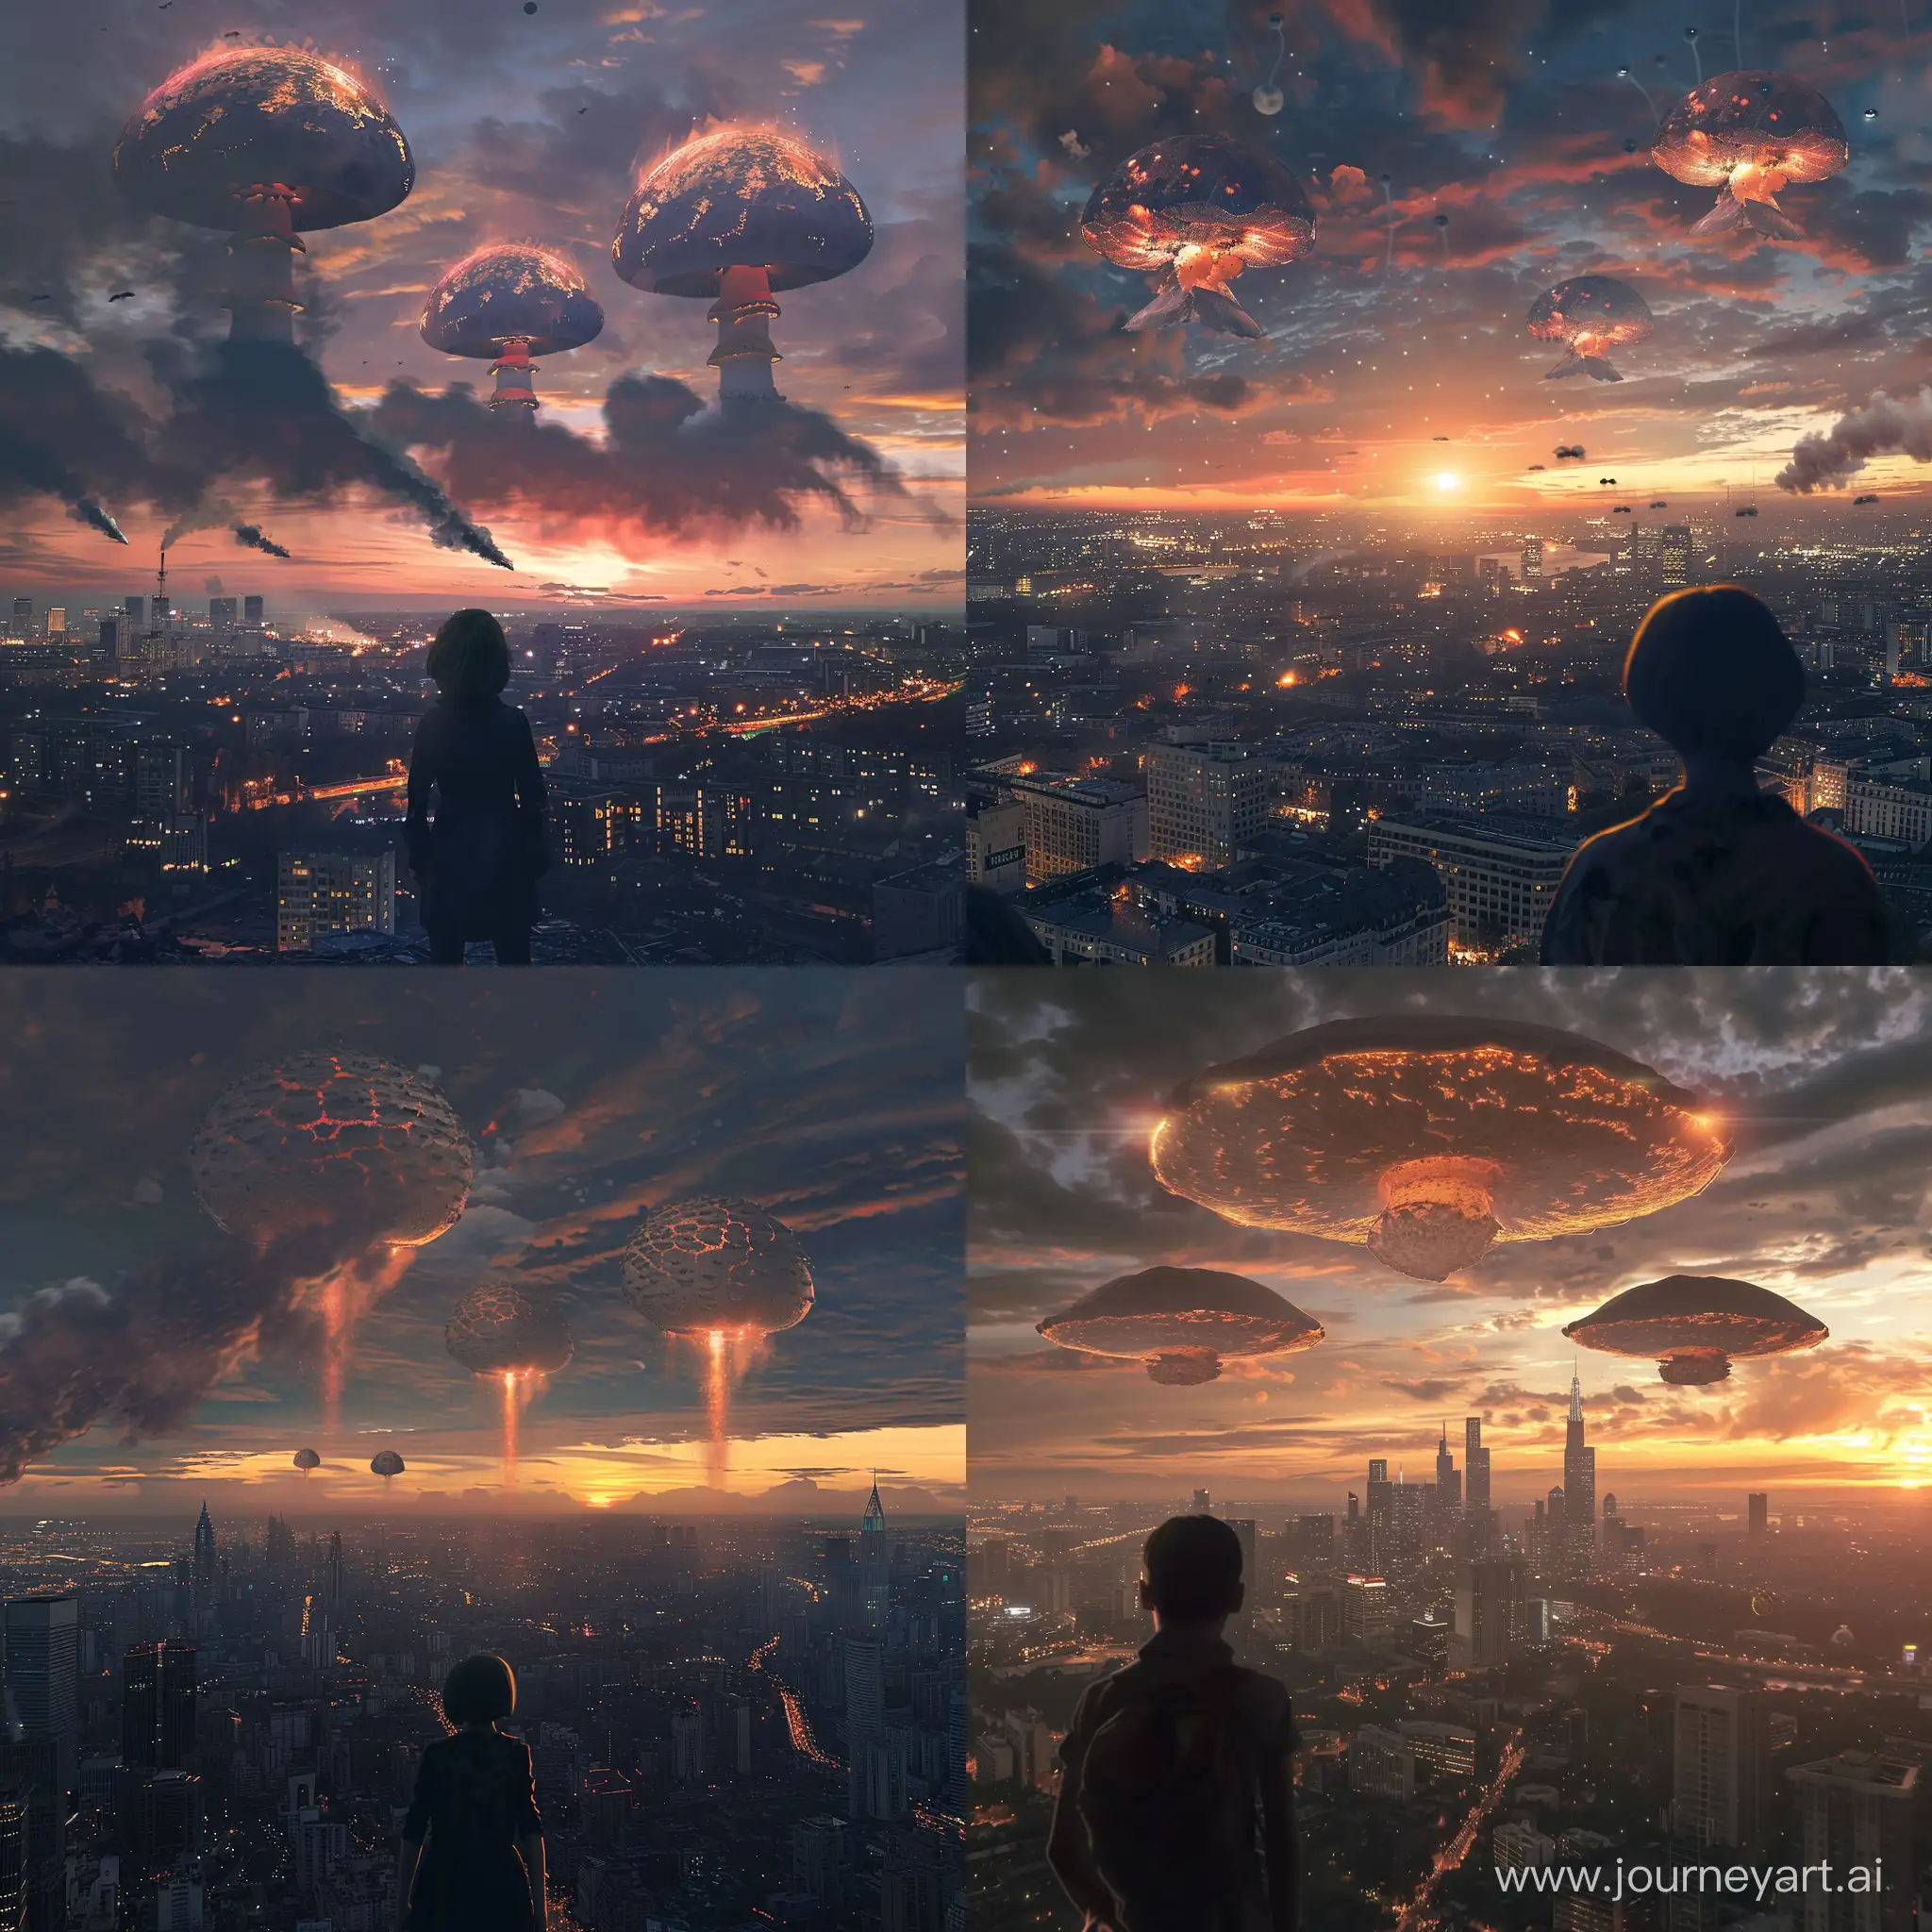 Человек удивленно смотрит на 3 ядерных гриба над большим мегаполисом,вечер, закат